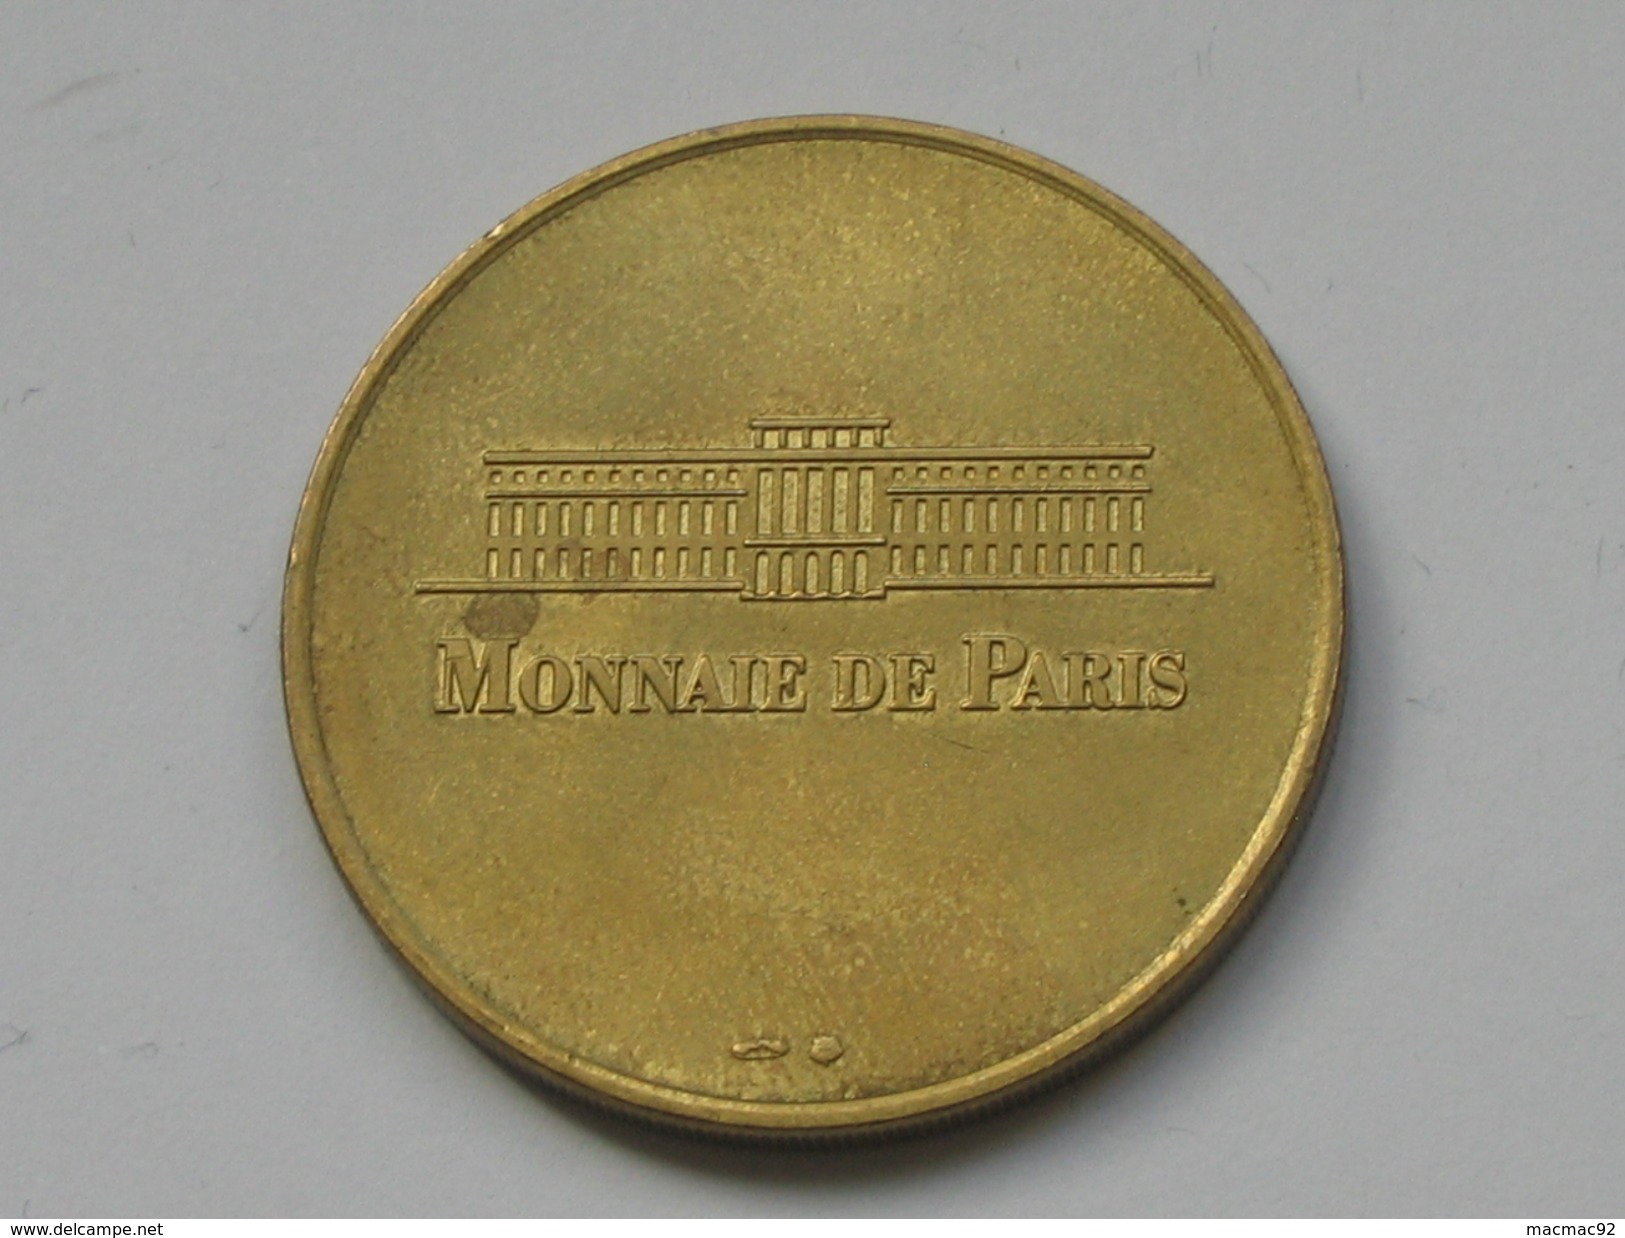 Monnaie De Paris 1997-1998 - DOME DES INVALIDES - TOMBEAU DE NAPOLEON    **** EN ACHAT IMMEDIAT  **** - Ohne Datum